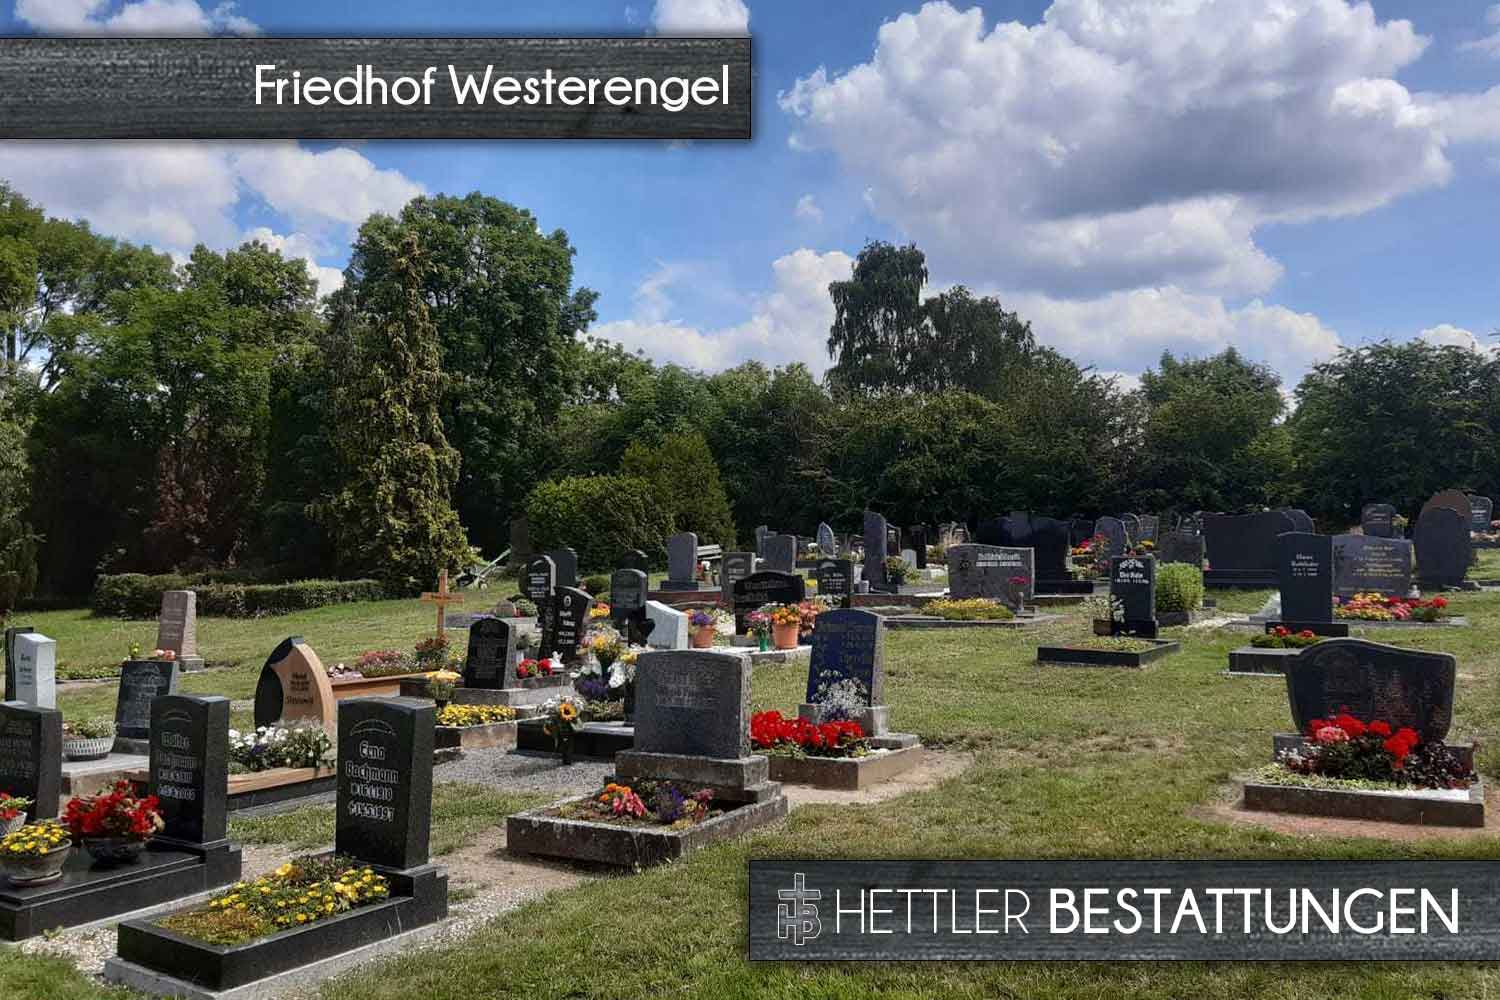 Friedhof in Westerengel. Ihr Ort des Abschieds mit Hettler Bestattungen.